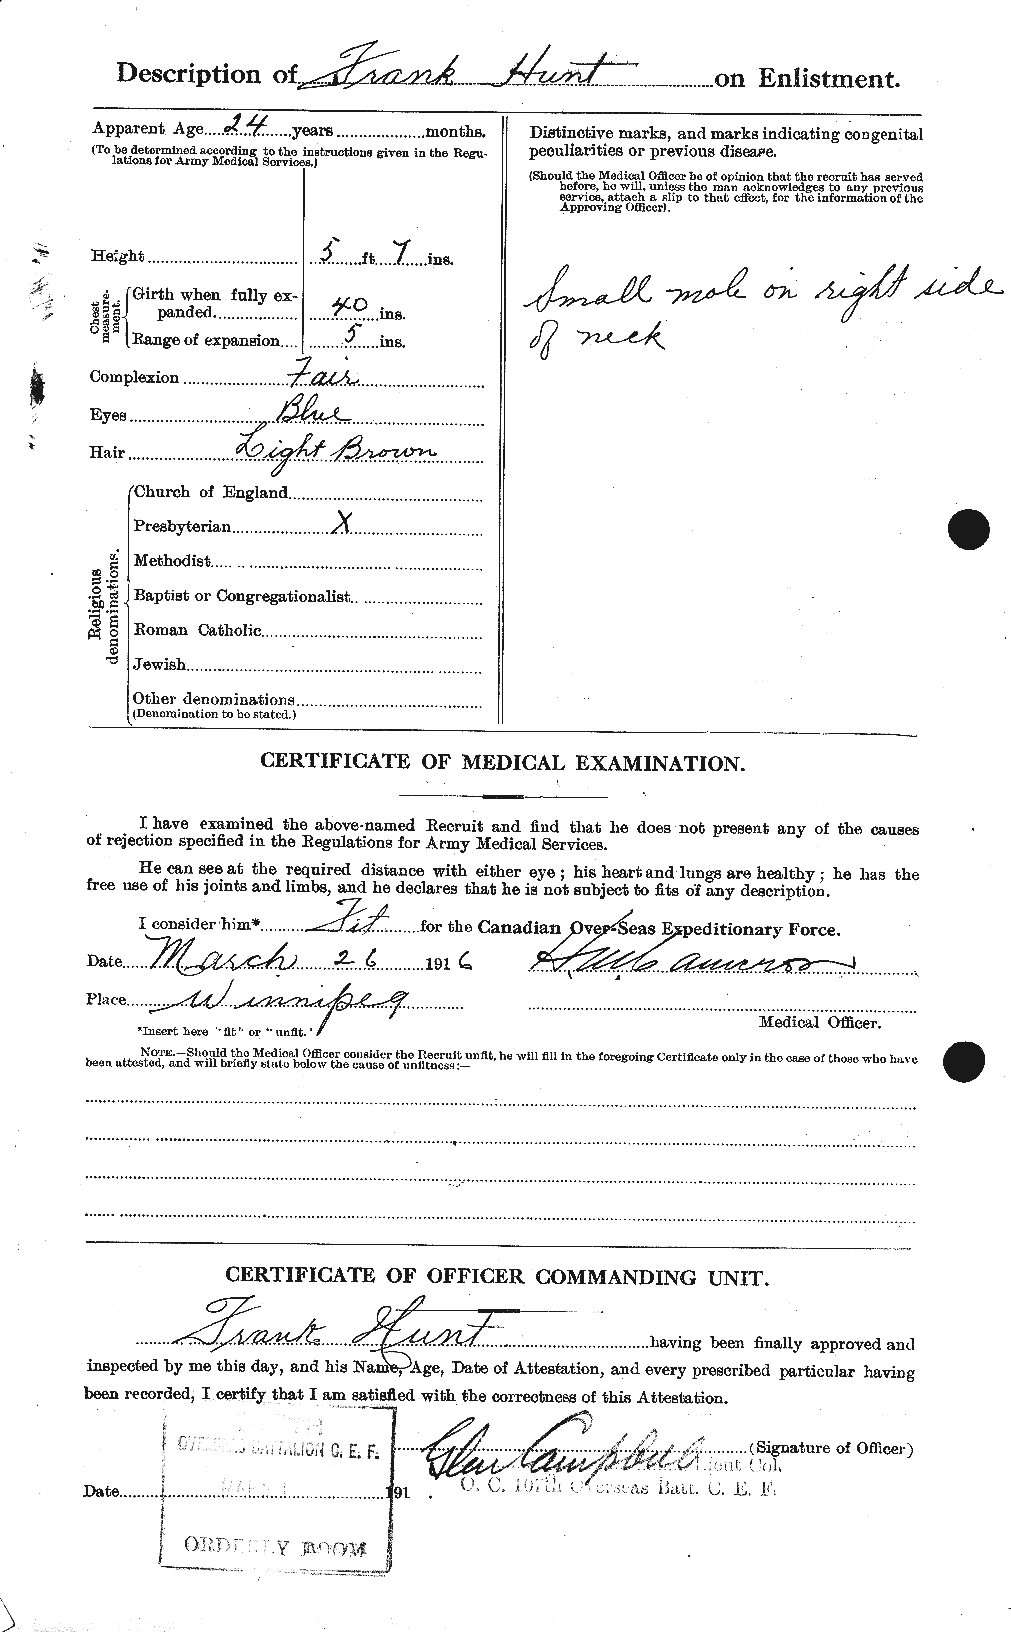 Dossiers du Personnel de la Première Guerre mondiale - CEC 407472b